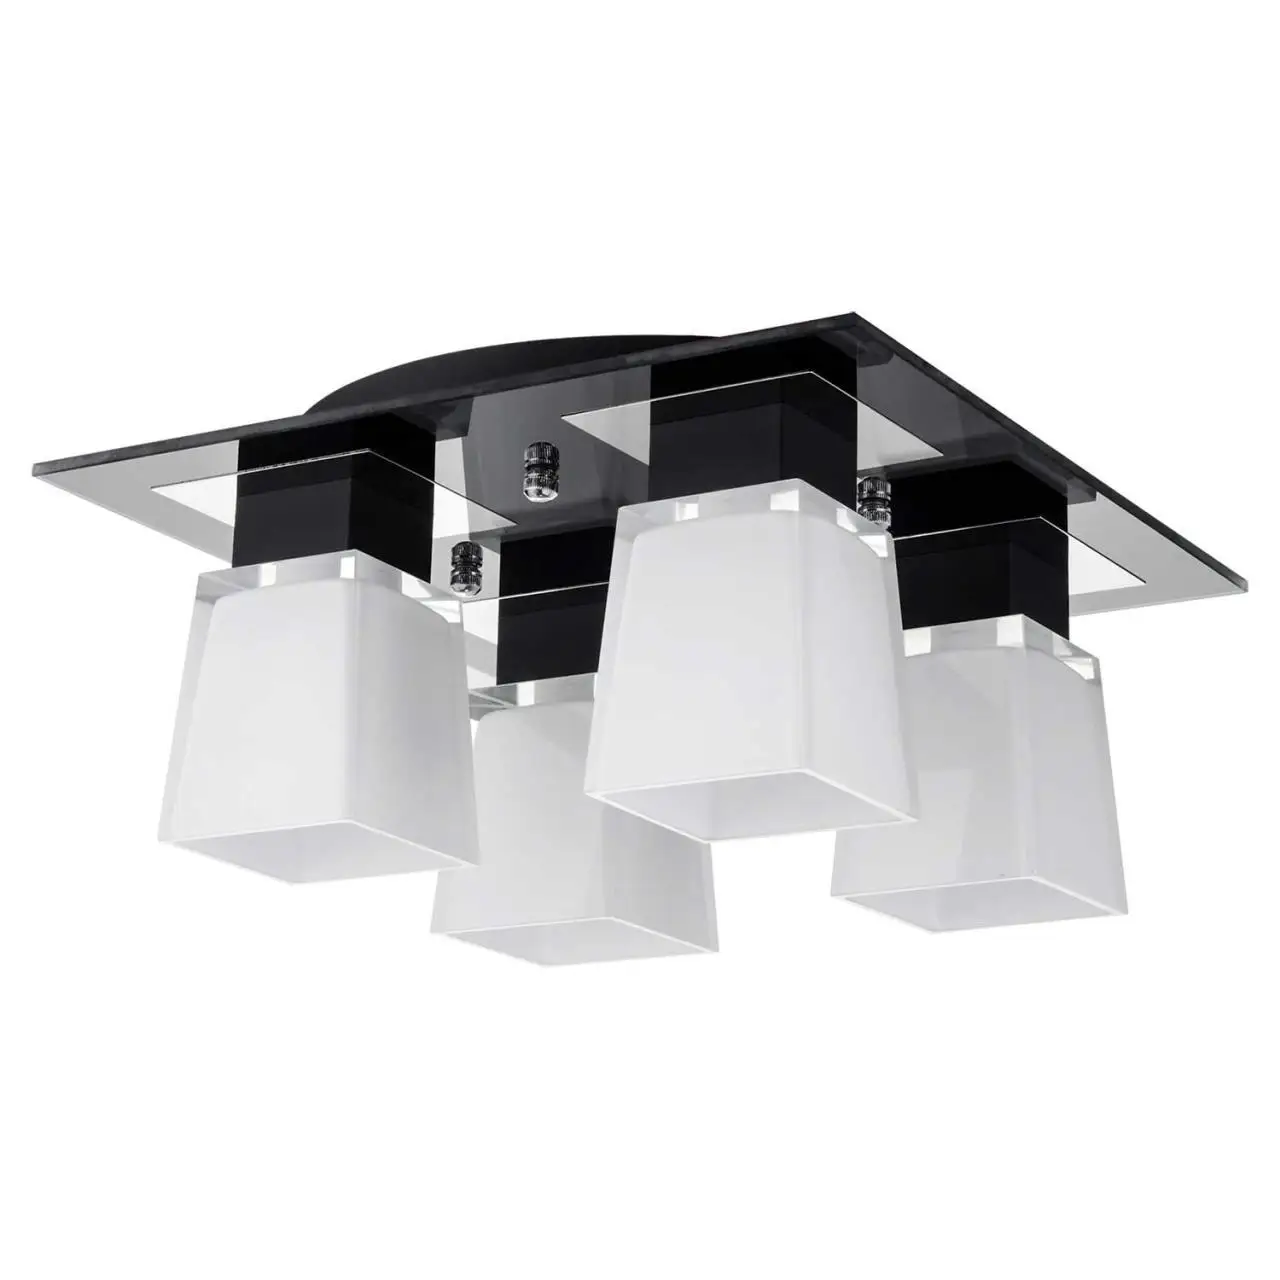 Lamp ceiling lussole (Series: lsc-2507) lsc-2507-04 4x40 W E14 lamp LED light настенно-ceiling lights | Лампы и освещение